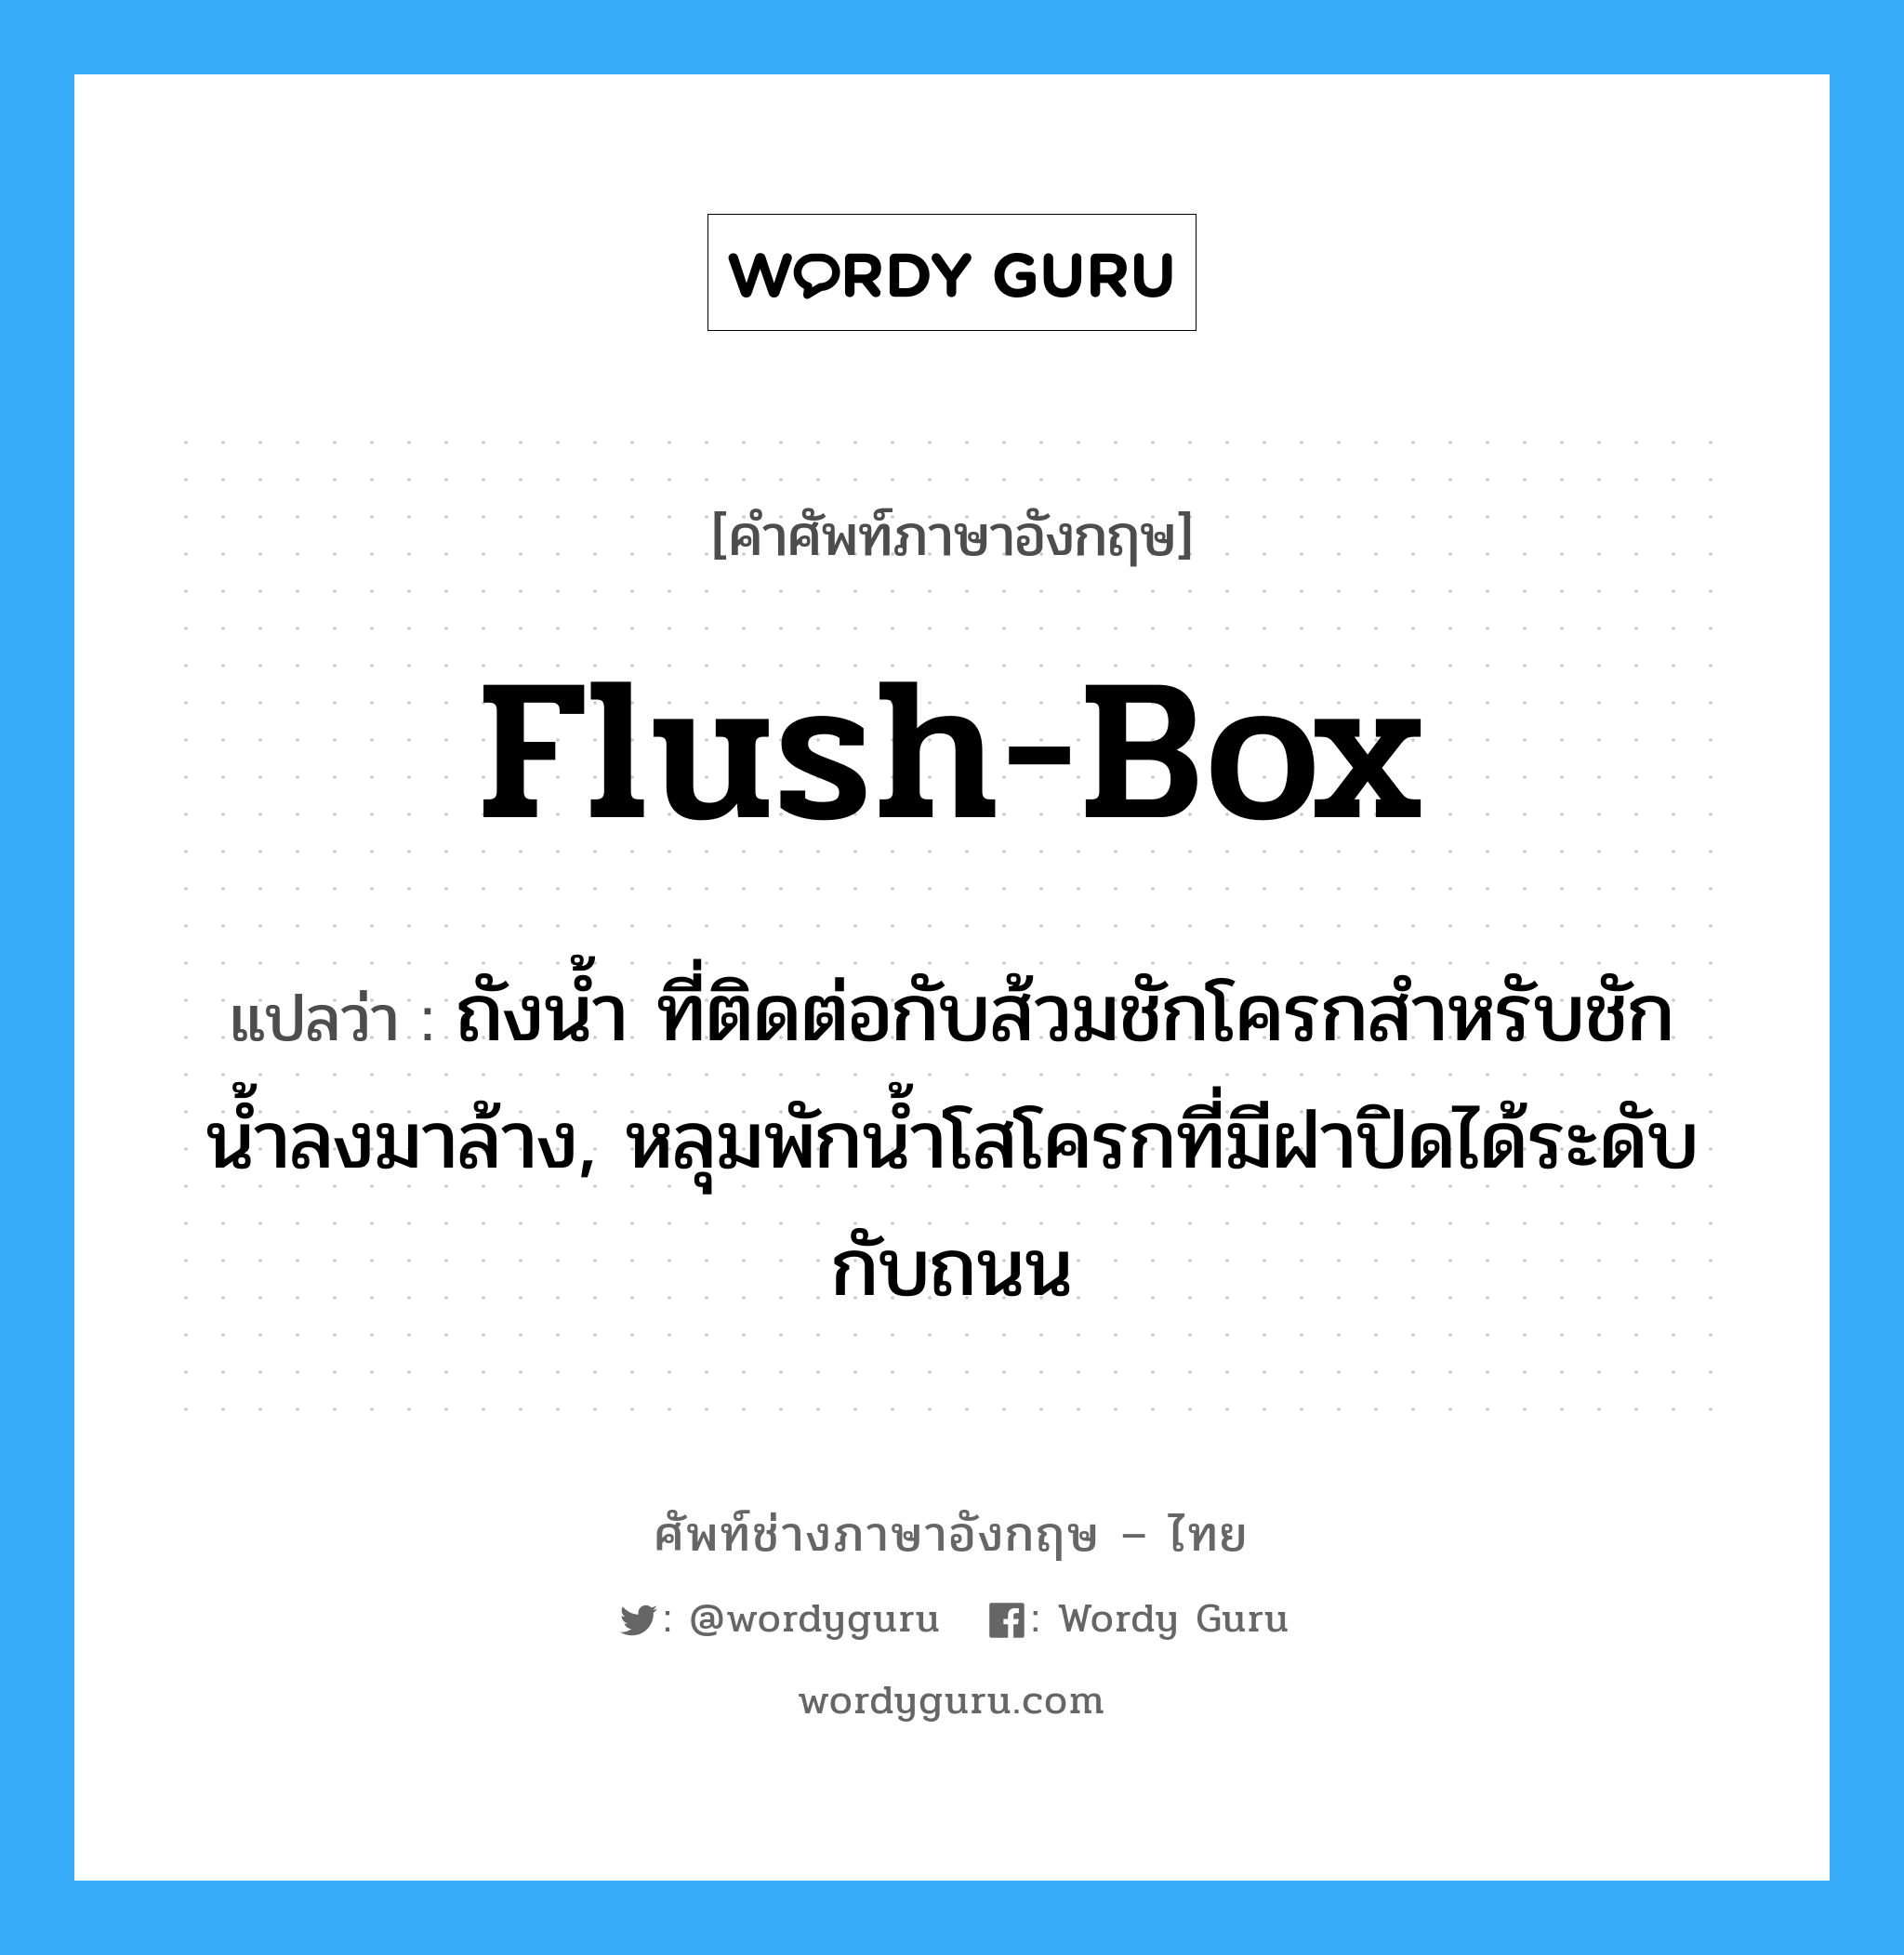 flush-box แปลว่า?, คำศัพท์ช่างภาษาอังกฤษ - ไทย flush-box คำศัพท์ภาษาอังกฤษ flush-box แปลว่า ถังน้ำ ที่ติดต่อกับส้วมชักโครกสำหรับชักน้ำลงมาล้าง, หลุมพักน้ำโสโครกที่มีฝาปิดได้ระดับกับถนน